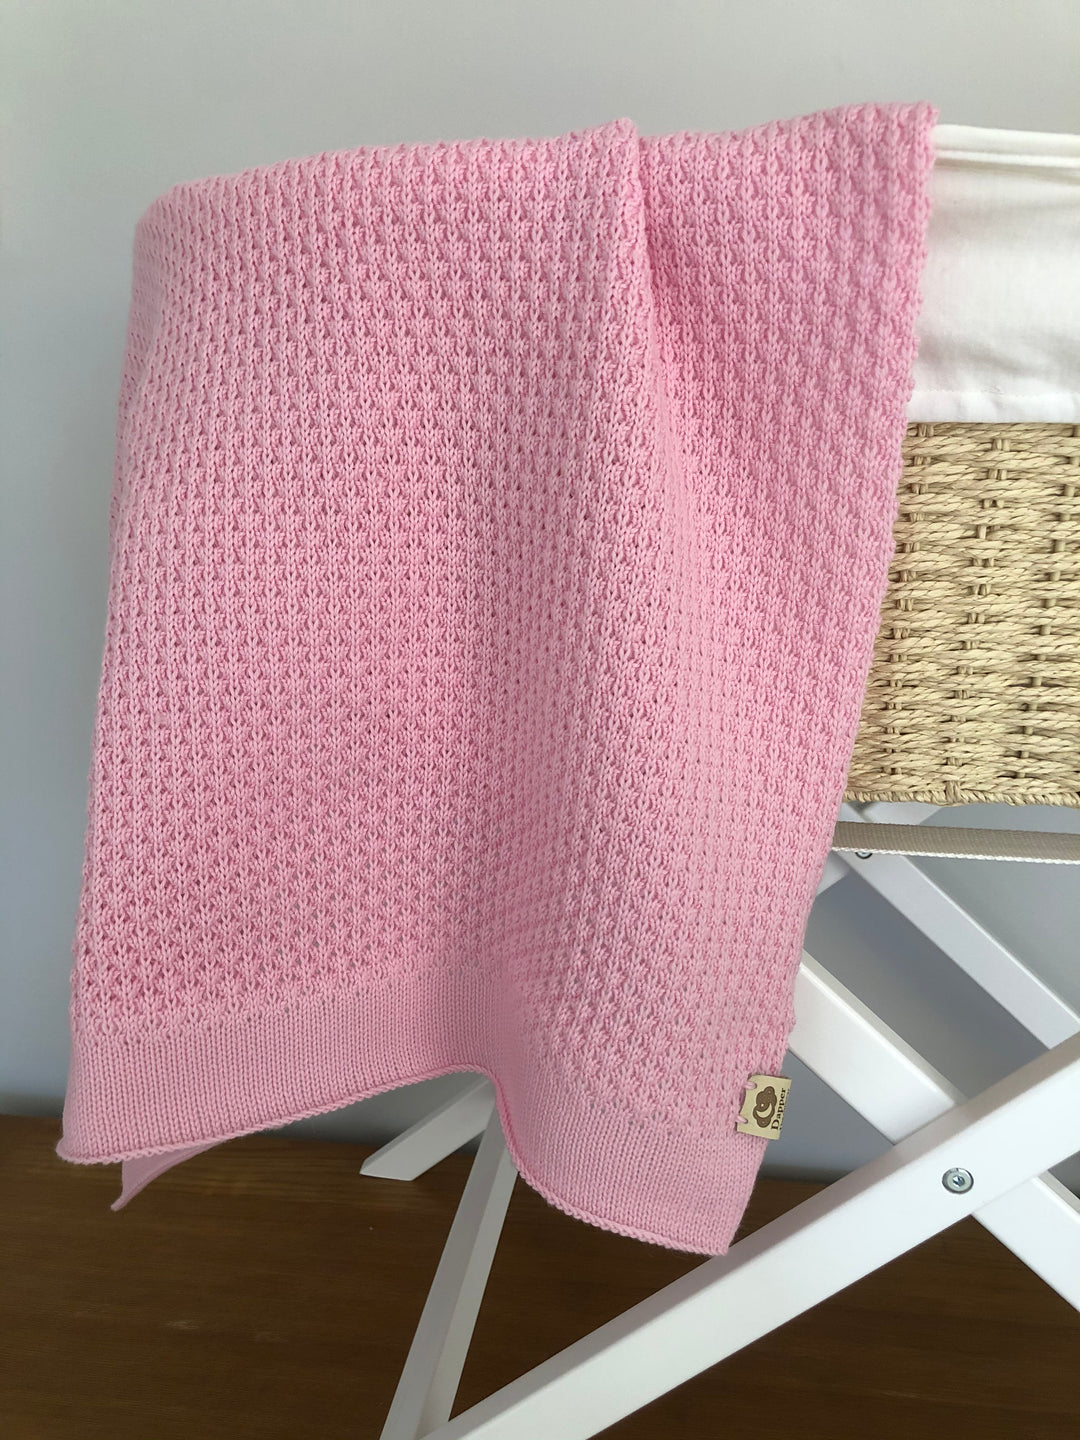 Dapper Dreamwear Merino x Baby Blanket and Beanie Gift